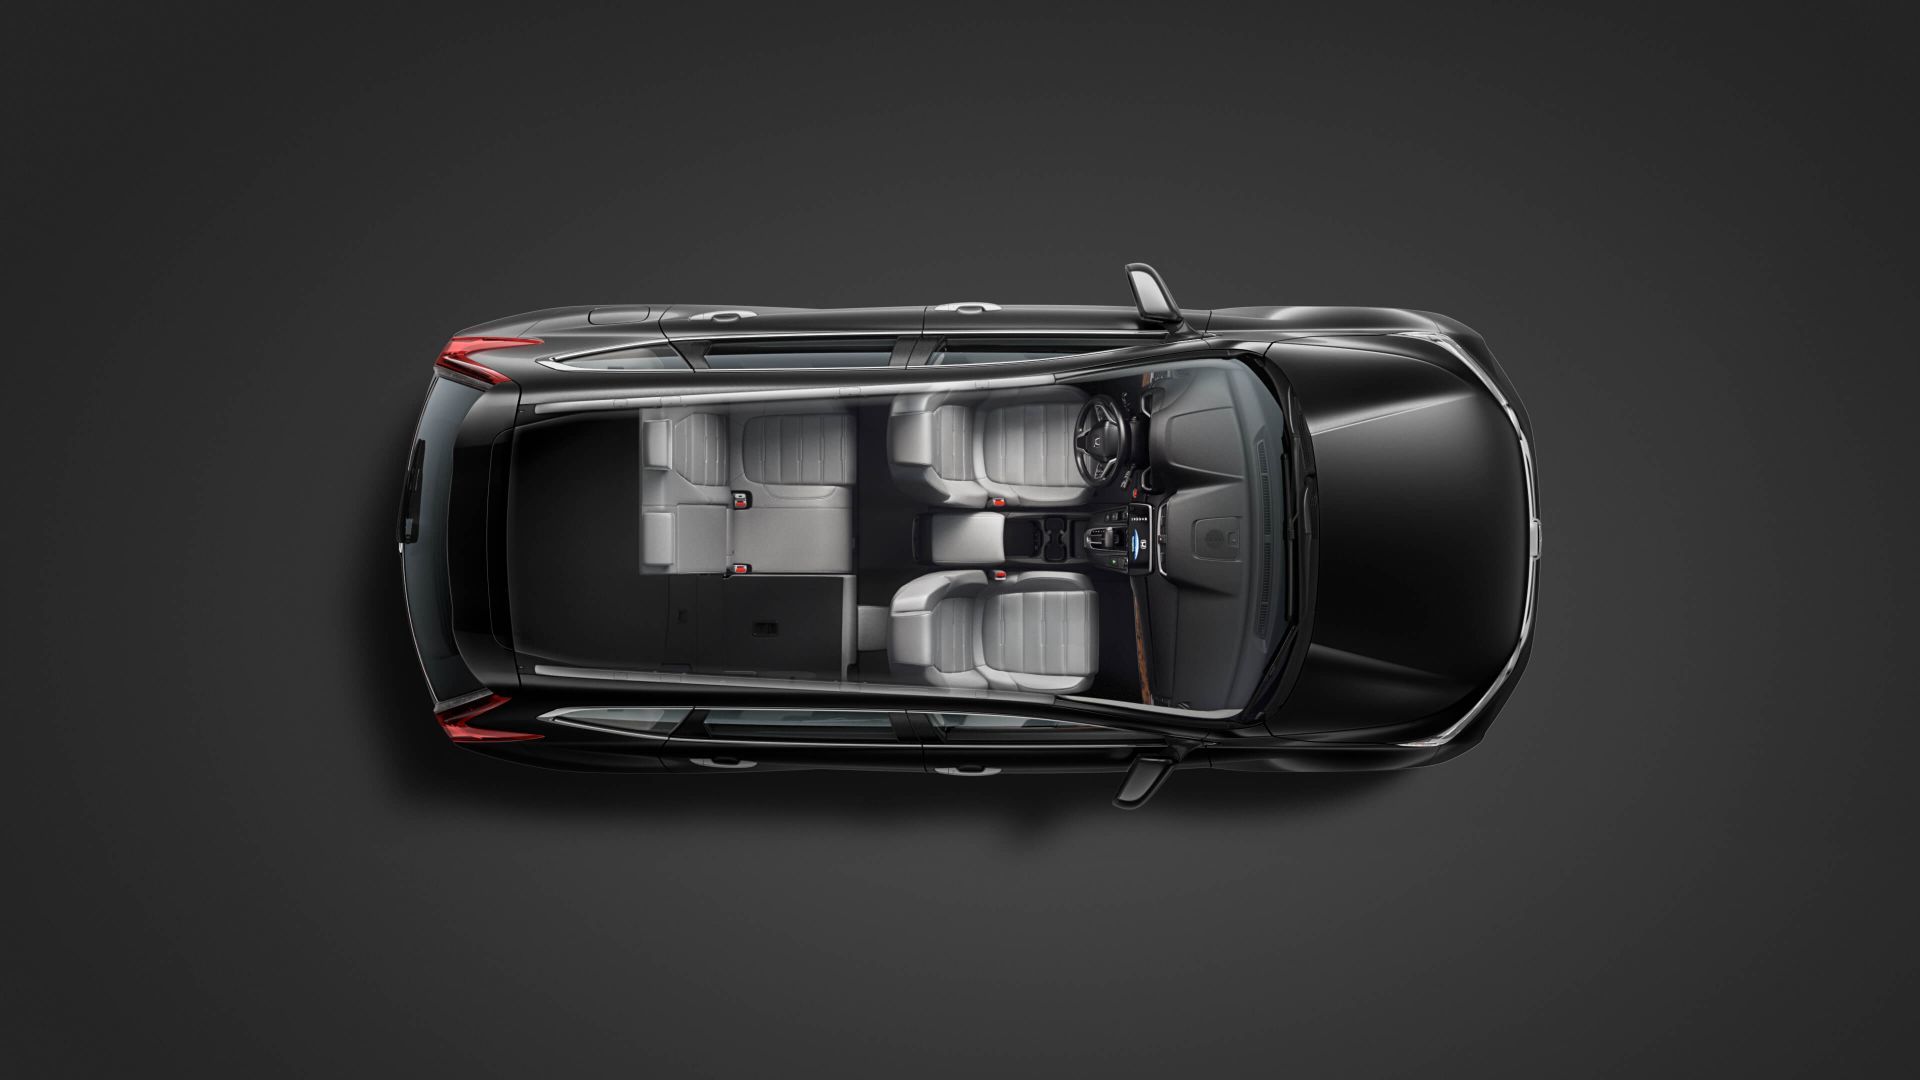 dessus du Honda CR-V 2018, toit ouvert dévoilant l'habitacle du véhicule